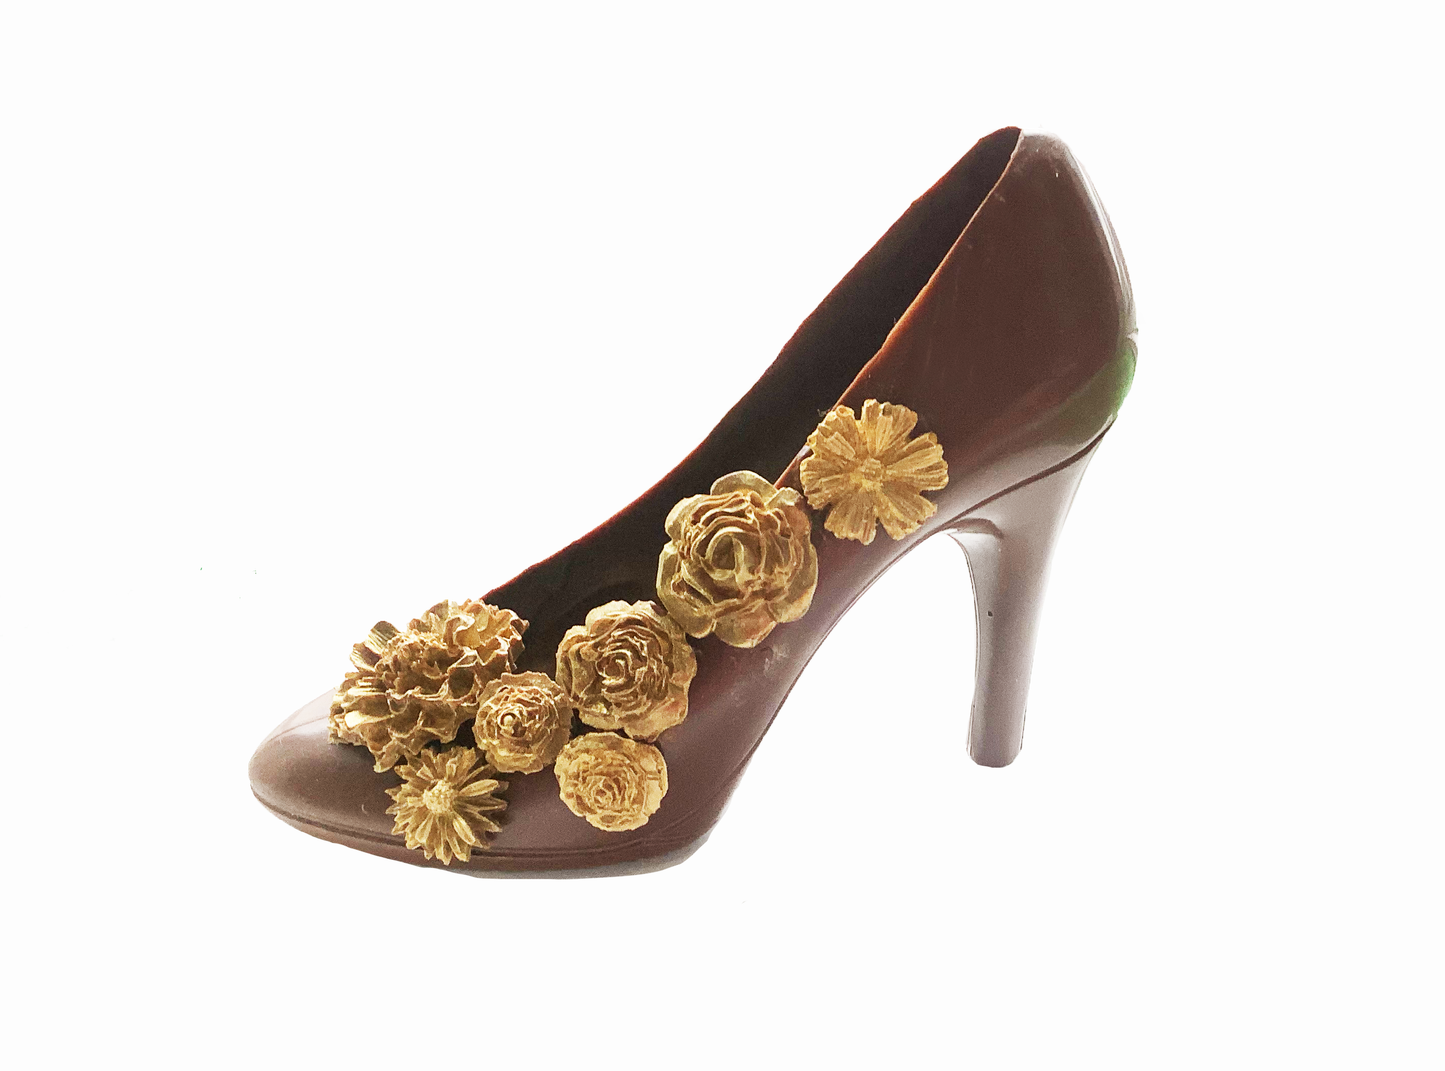 Handmade Vegan Chocolate Shoe with handmade Gold Flowers